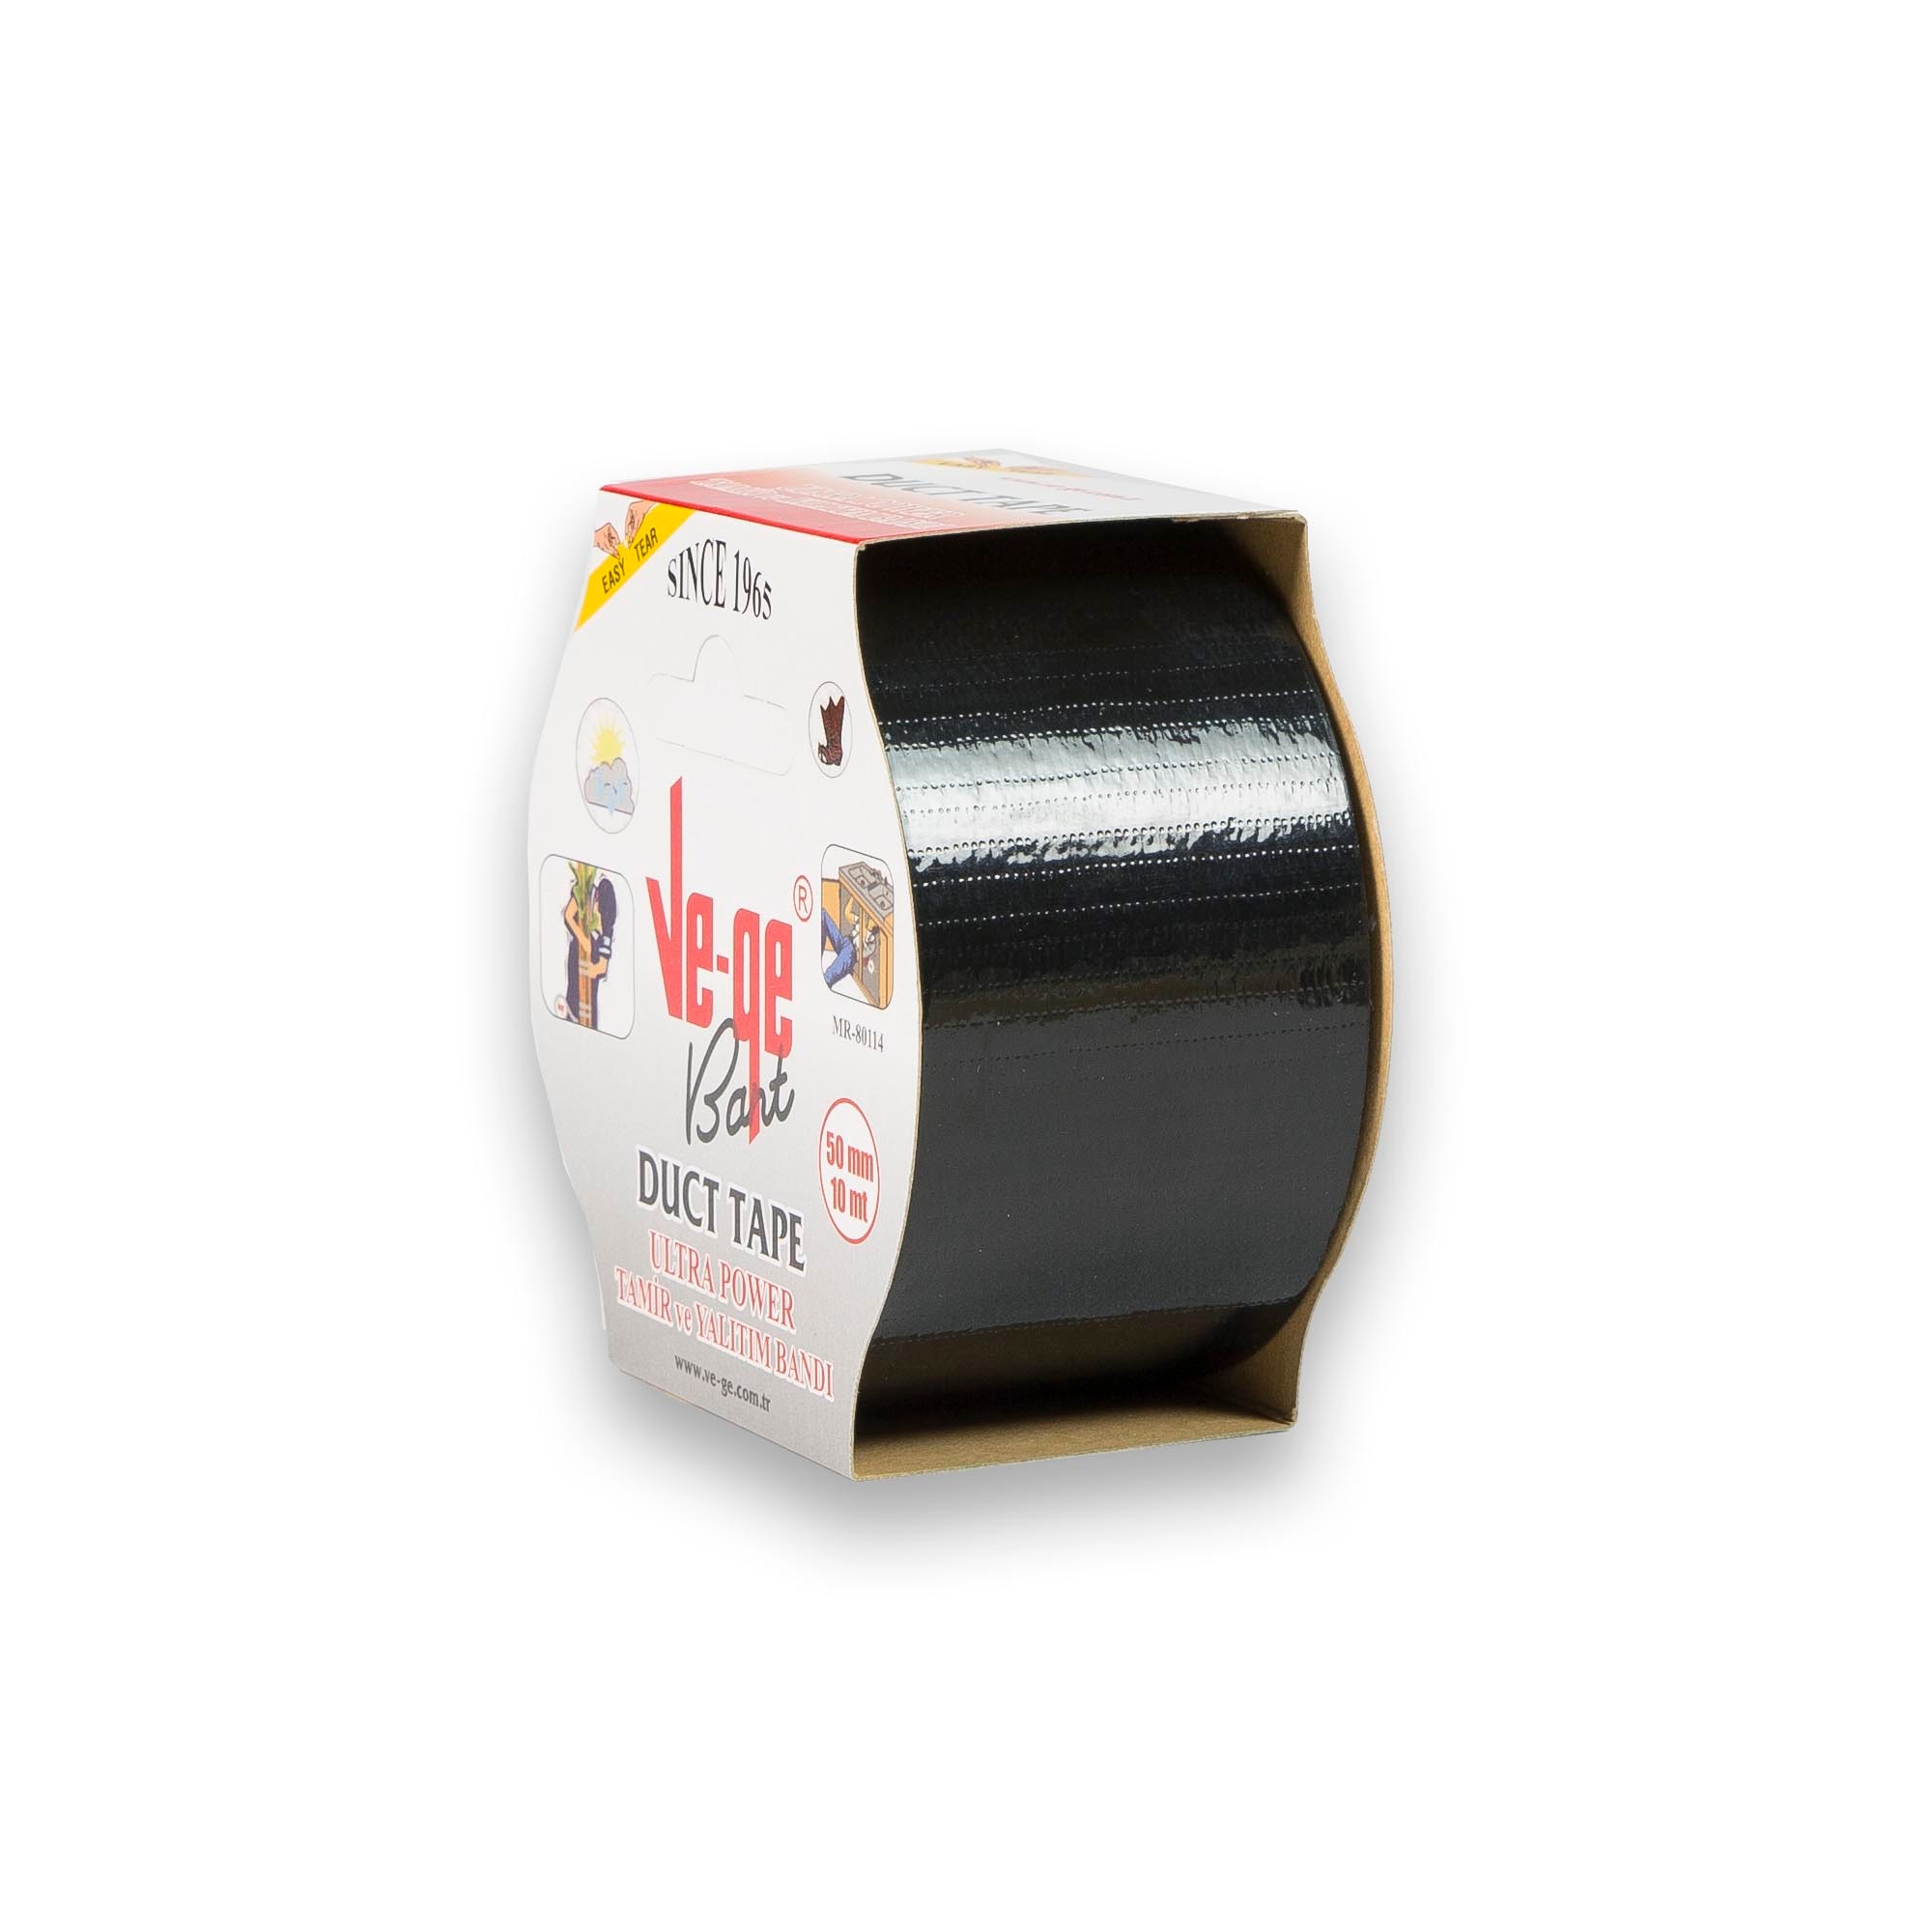 Tamir Yalıtım Bandı (Duck Tape) 50 mm x 10 m - Siyah